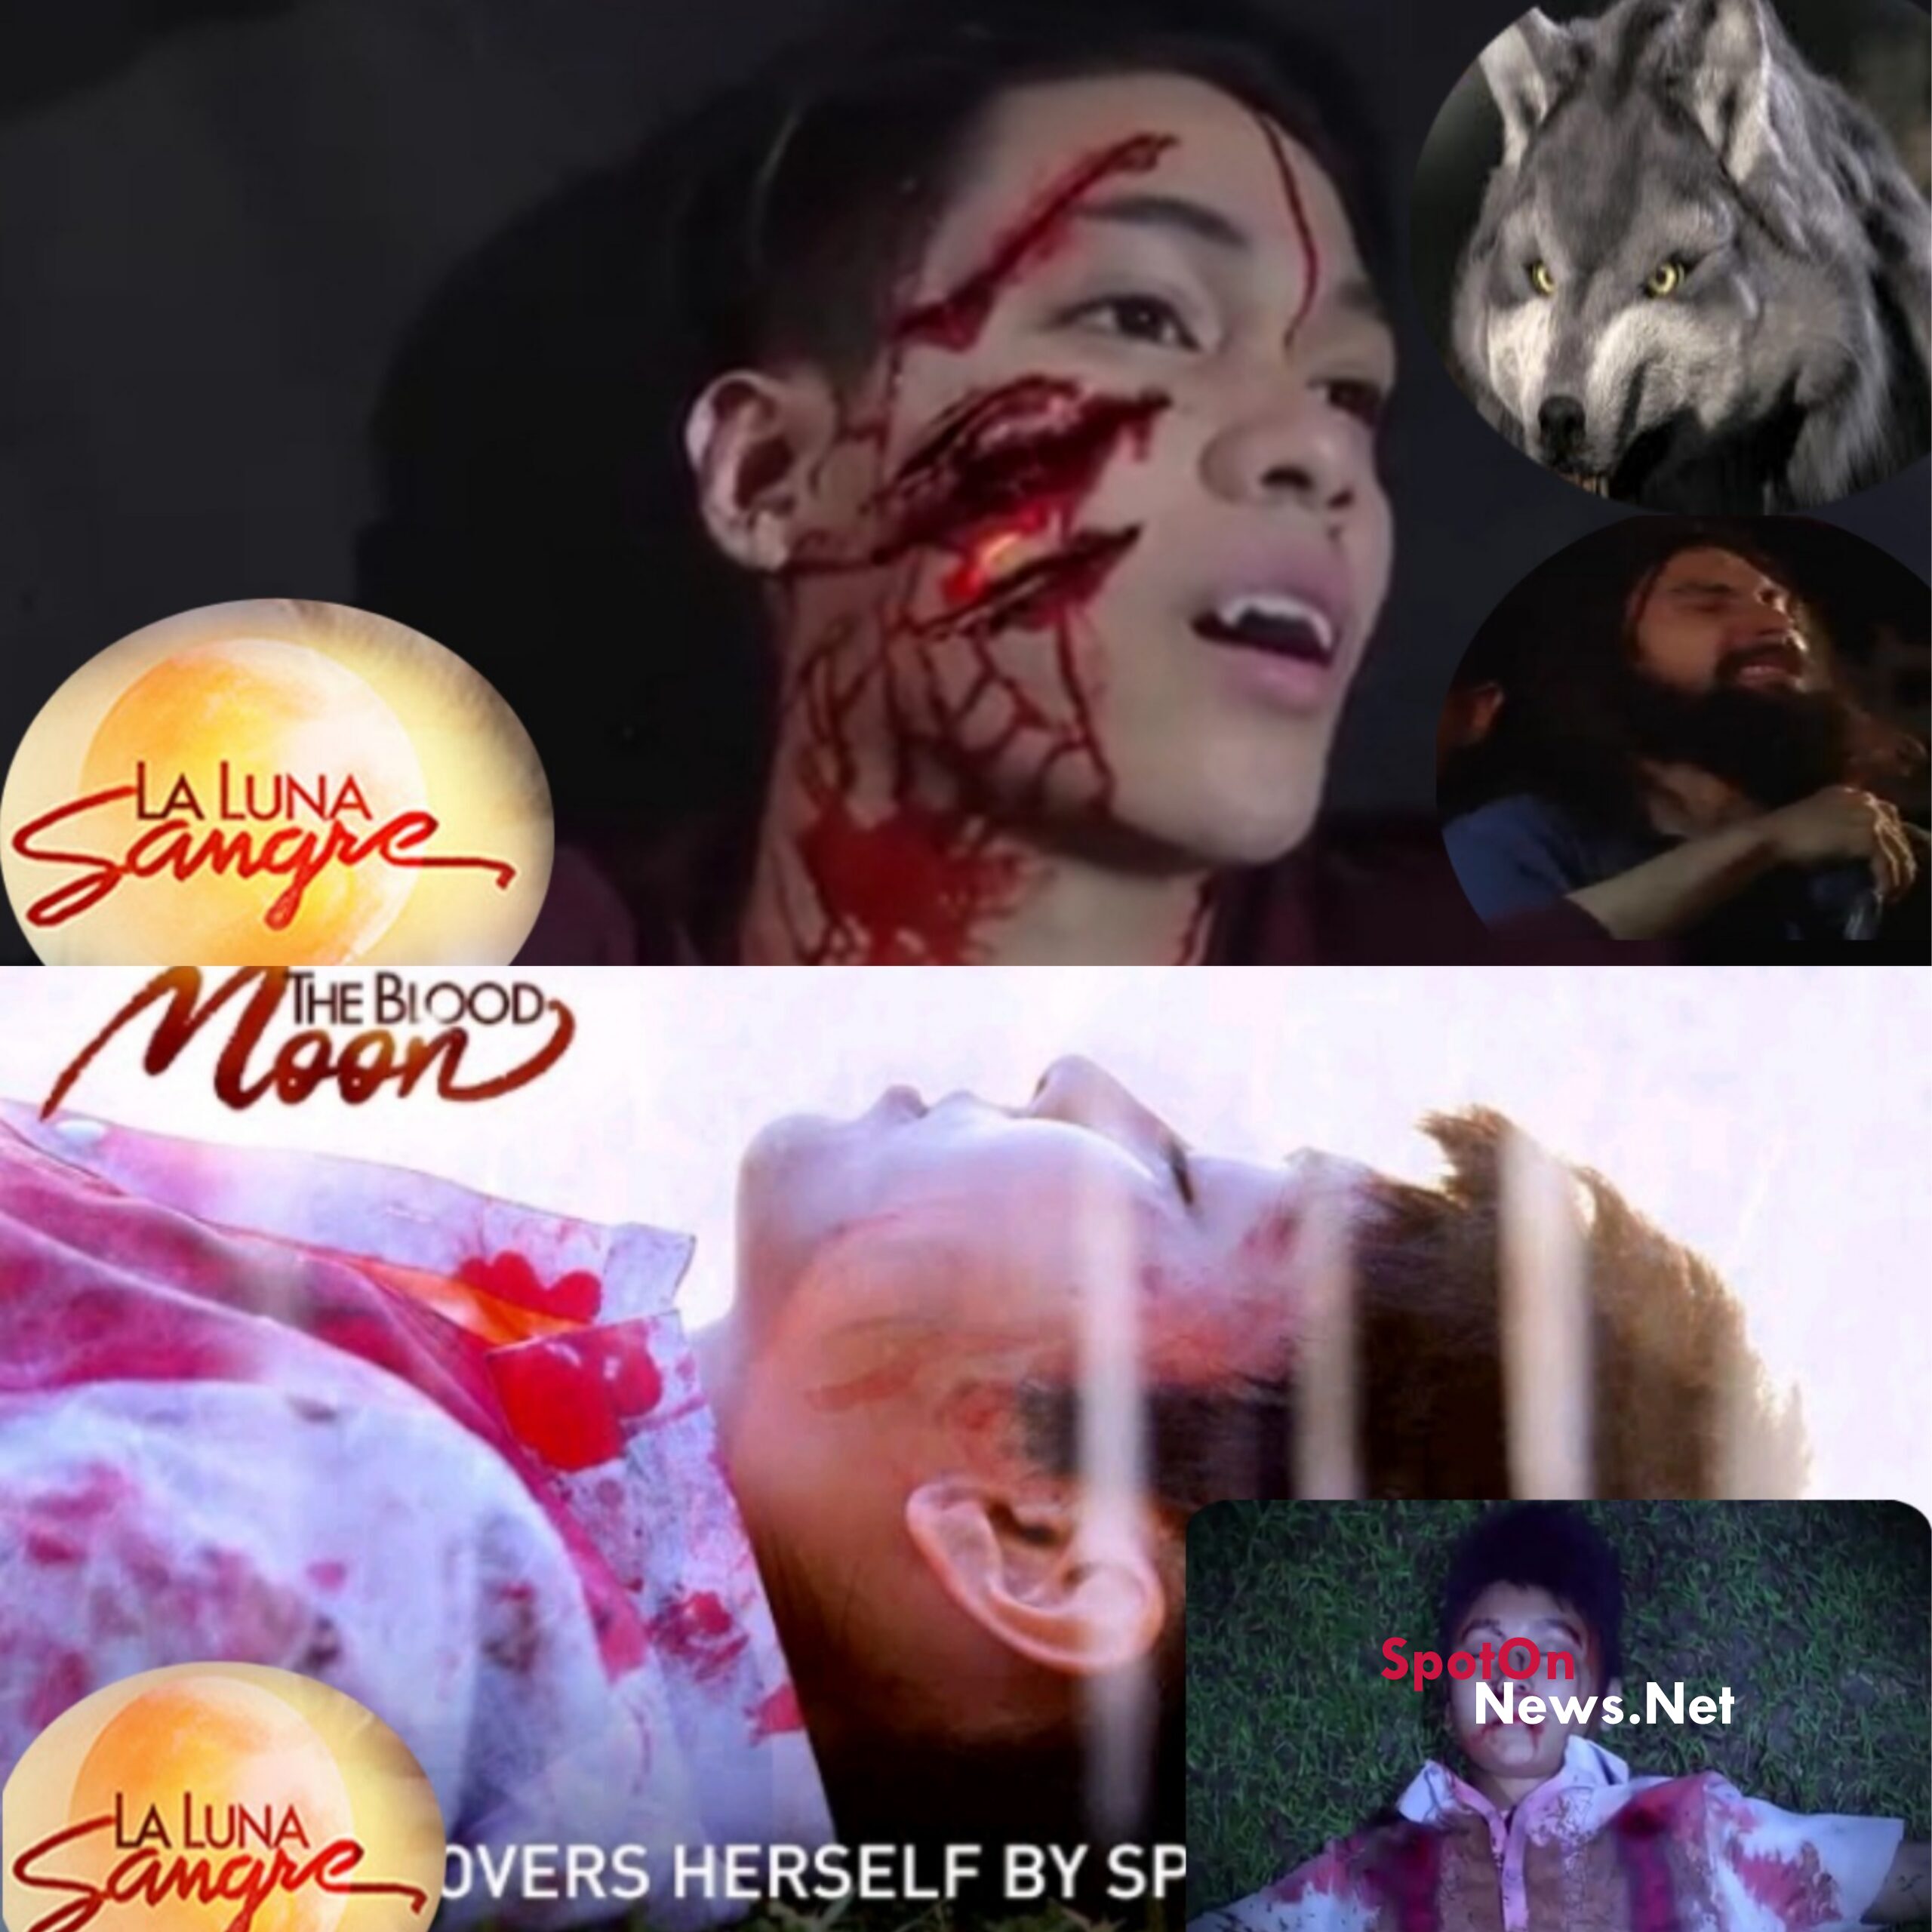 The Blood Moon 'La Luna Sangre' Episode 32